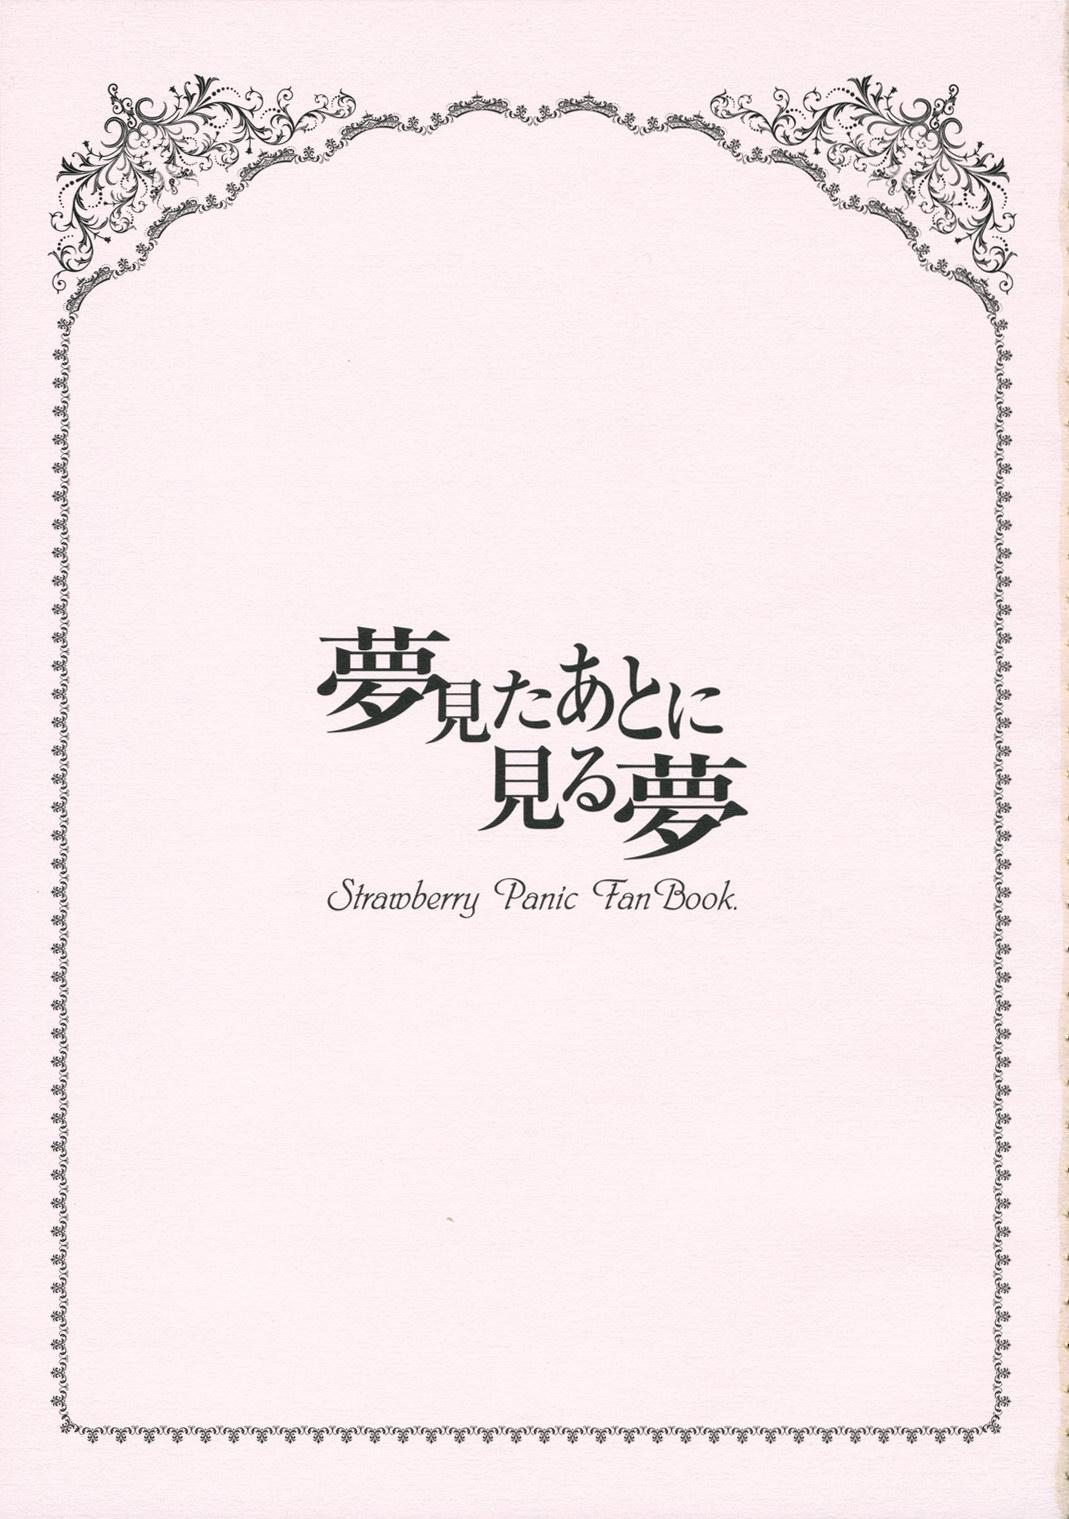 Romance Yume Mita Ato ni Miru Yume - Strawberry panic Amante - Page 2